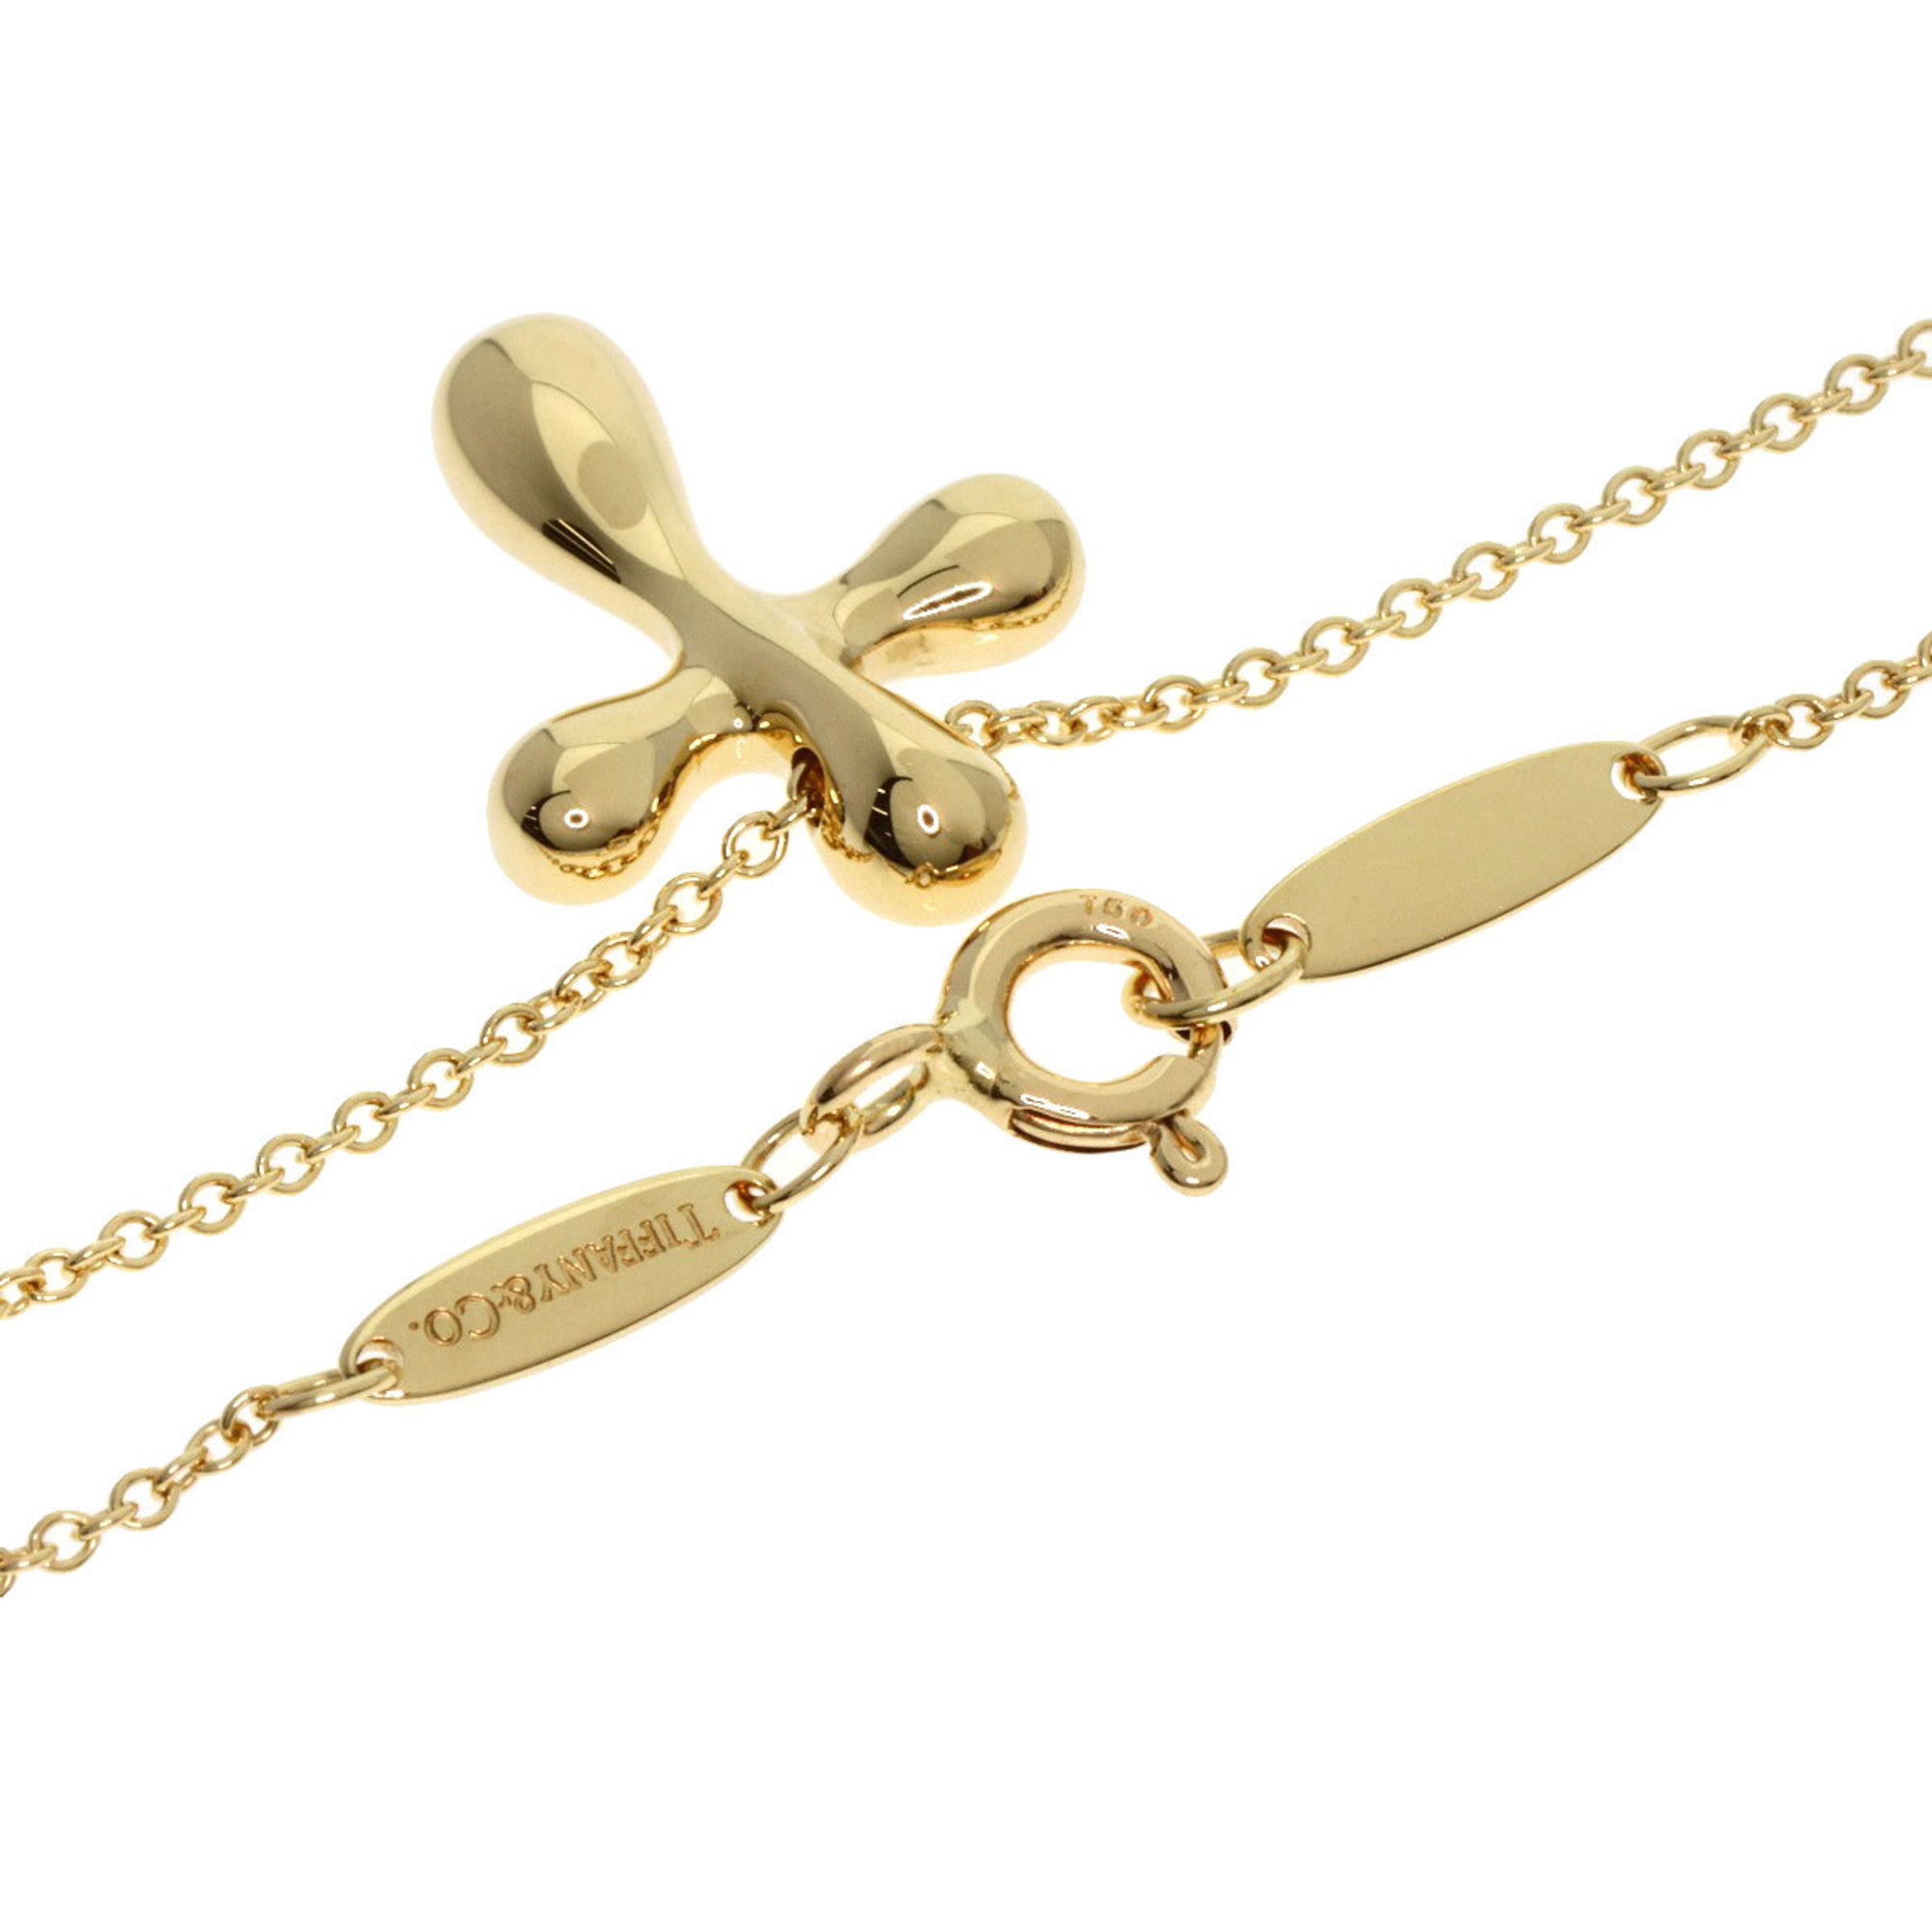 Tiffany Small Cross Necklace K18 Yellow Gold Women's TIFFANY&Co.